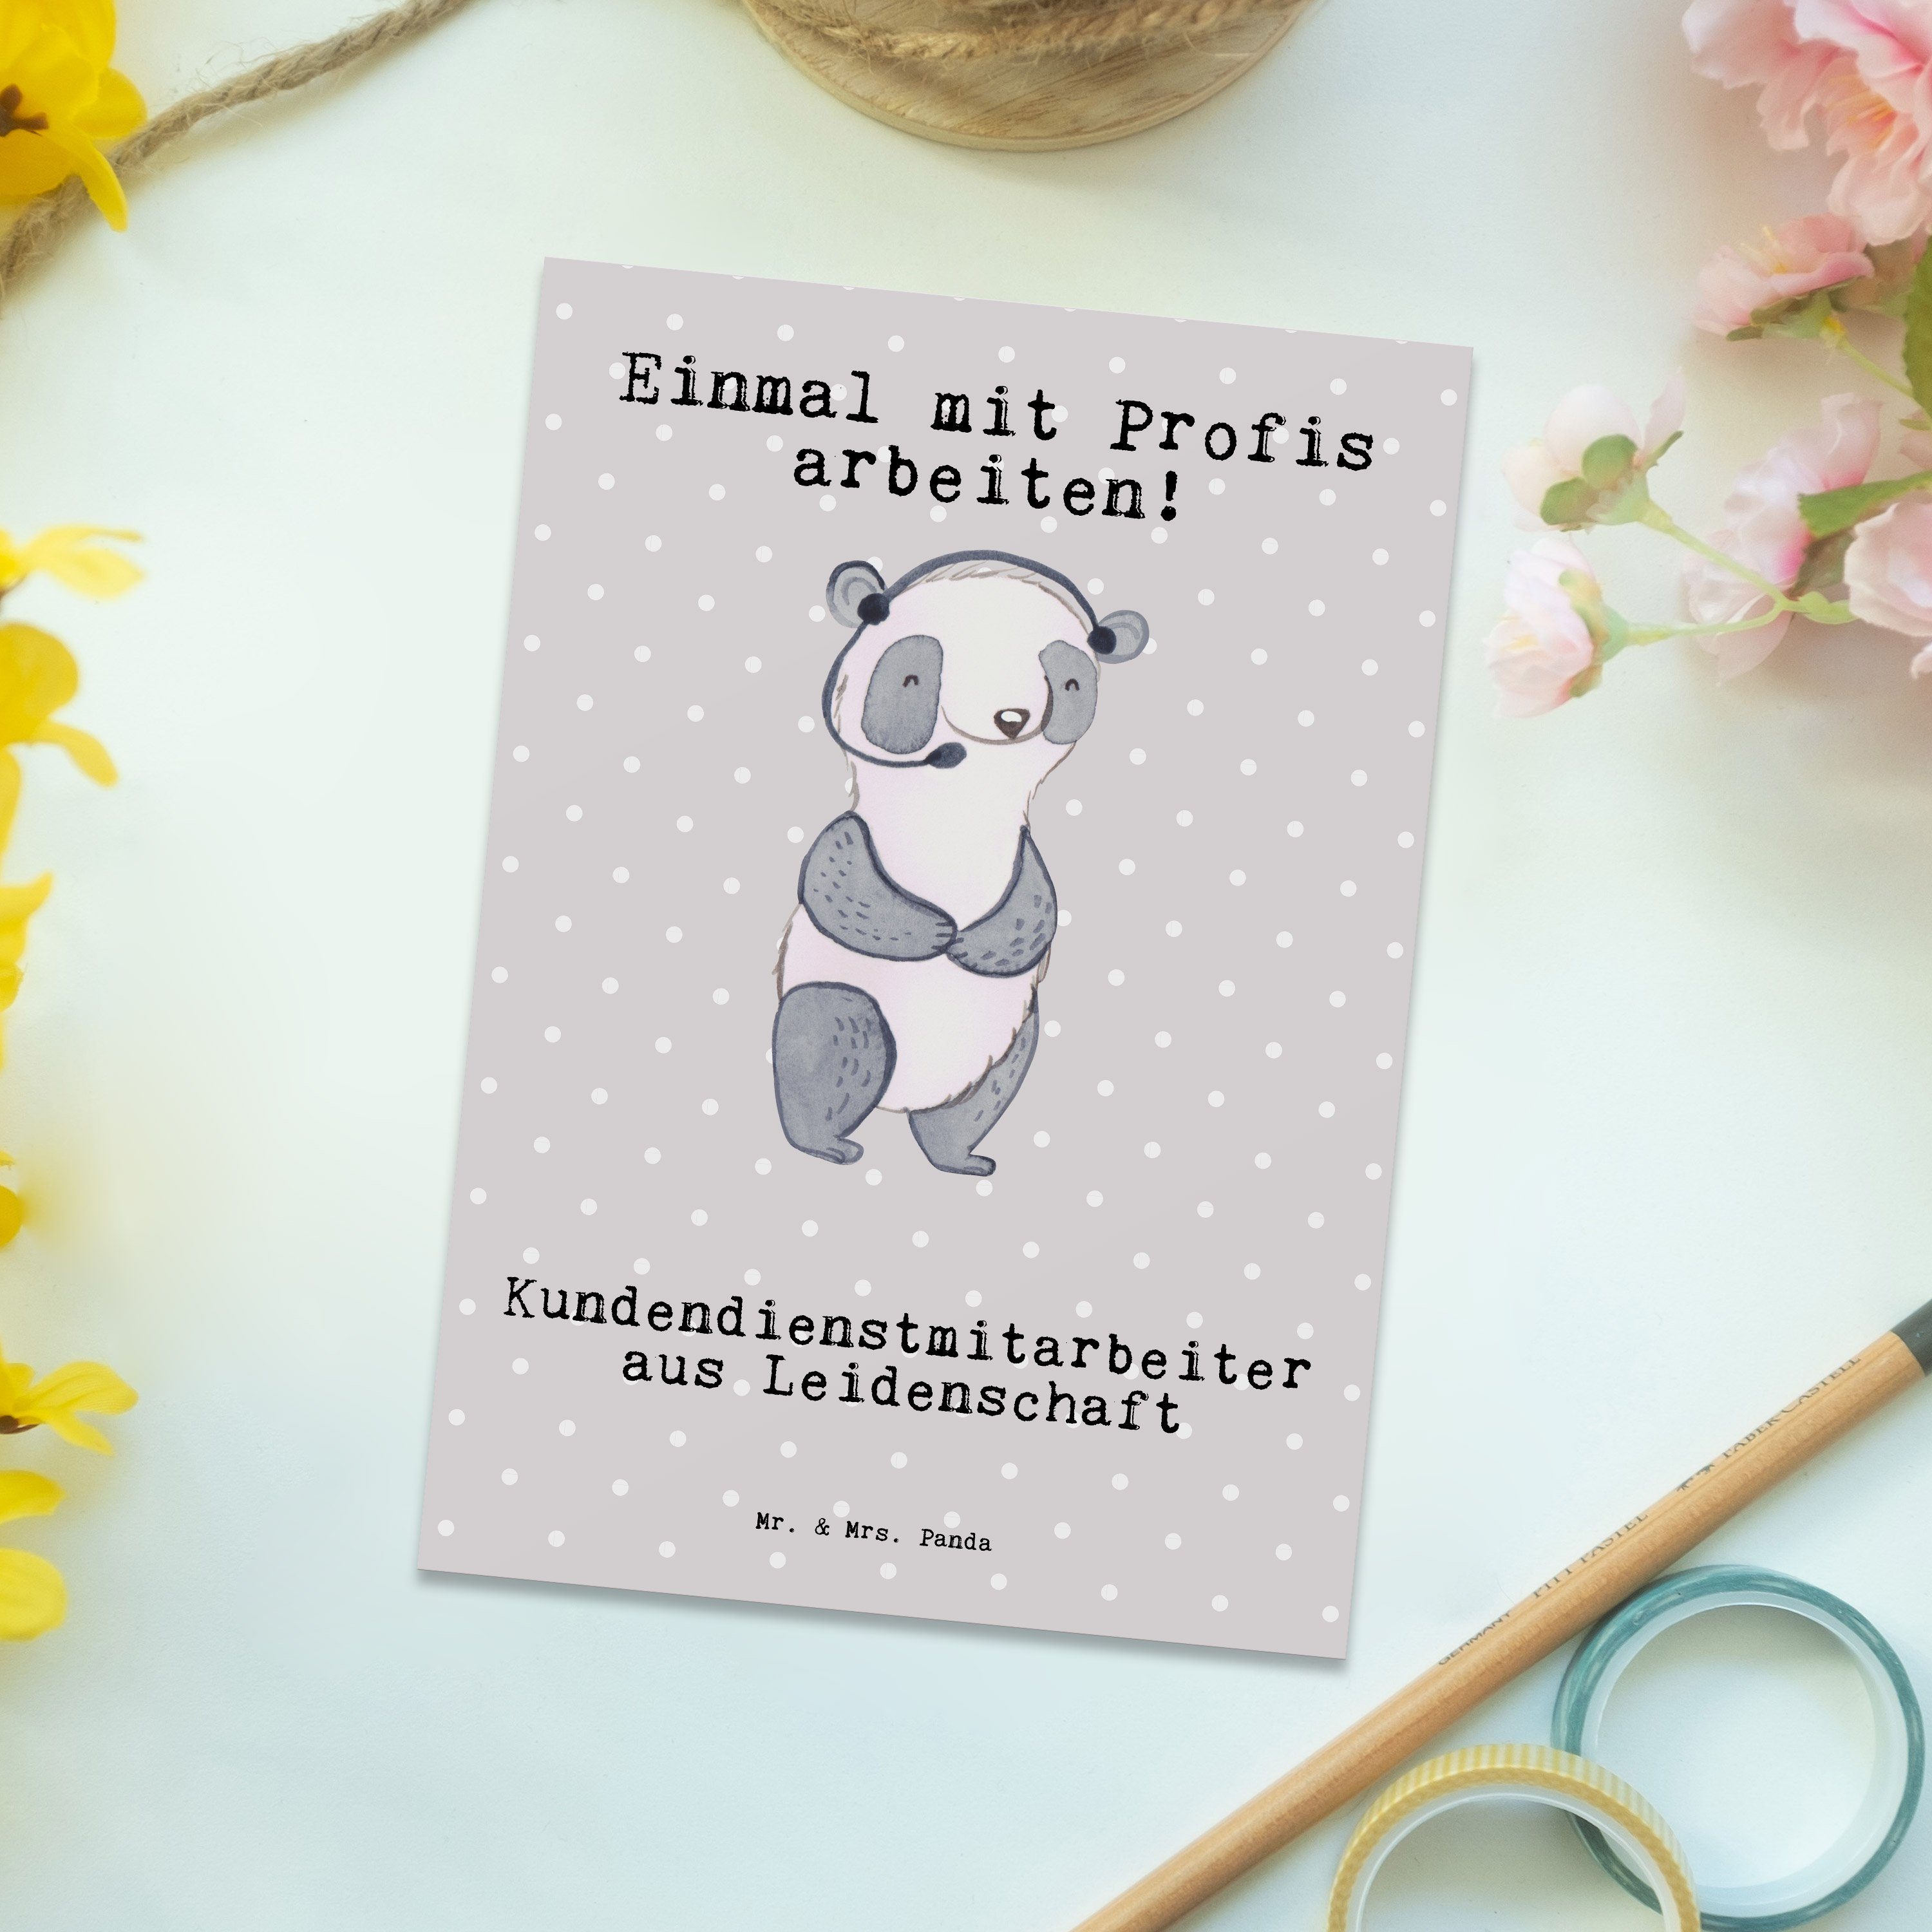 Grau & Leidenschaft - h Kundendienstmitarbeiter - Geschenk, Postkarte Mr. Panda Pastell aus Mrs.